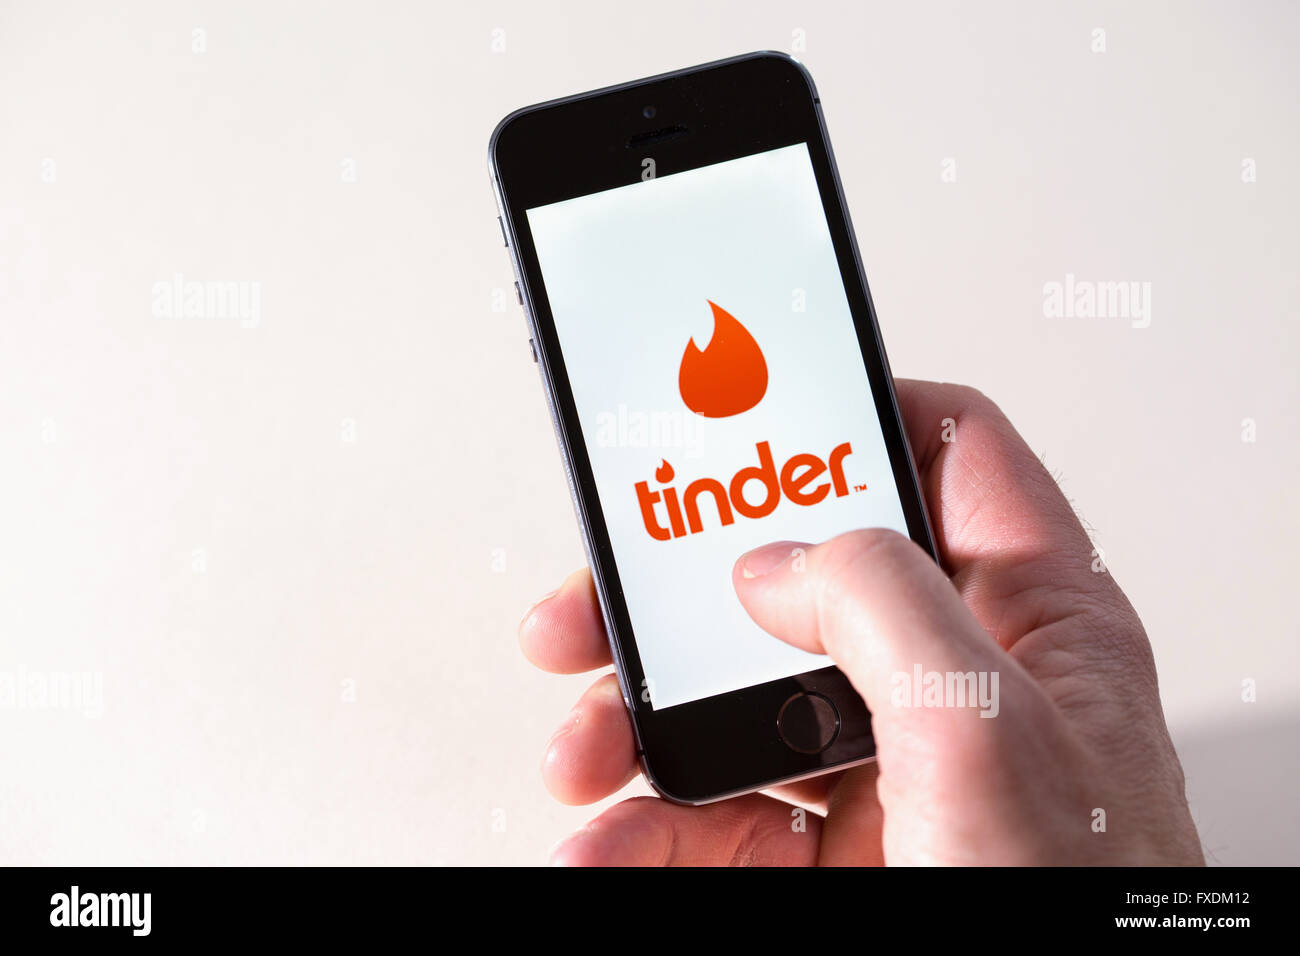 Zunder dating apps indien